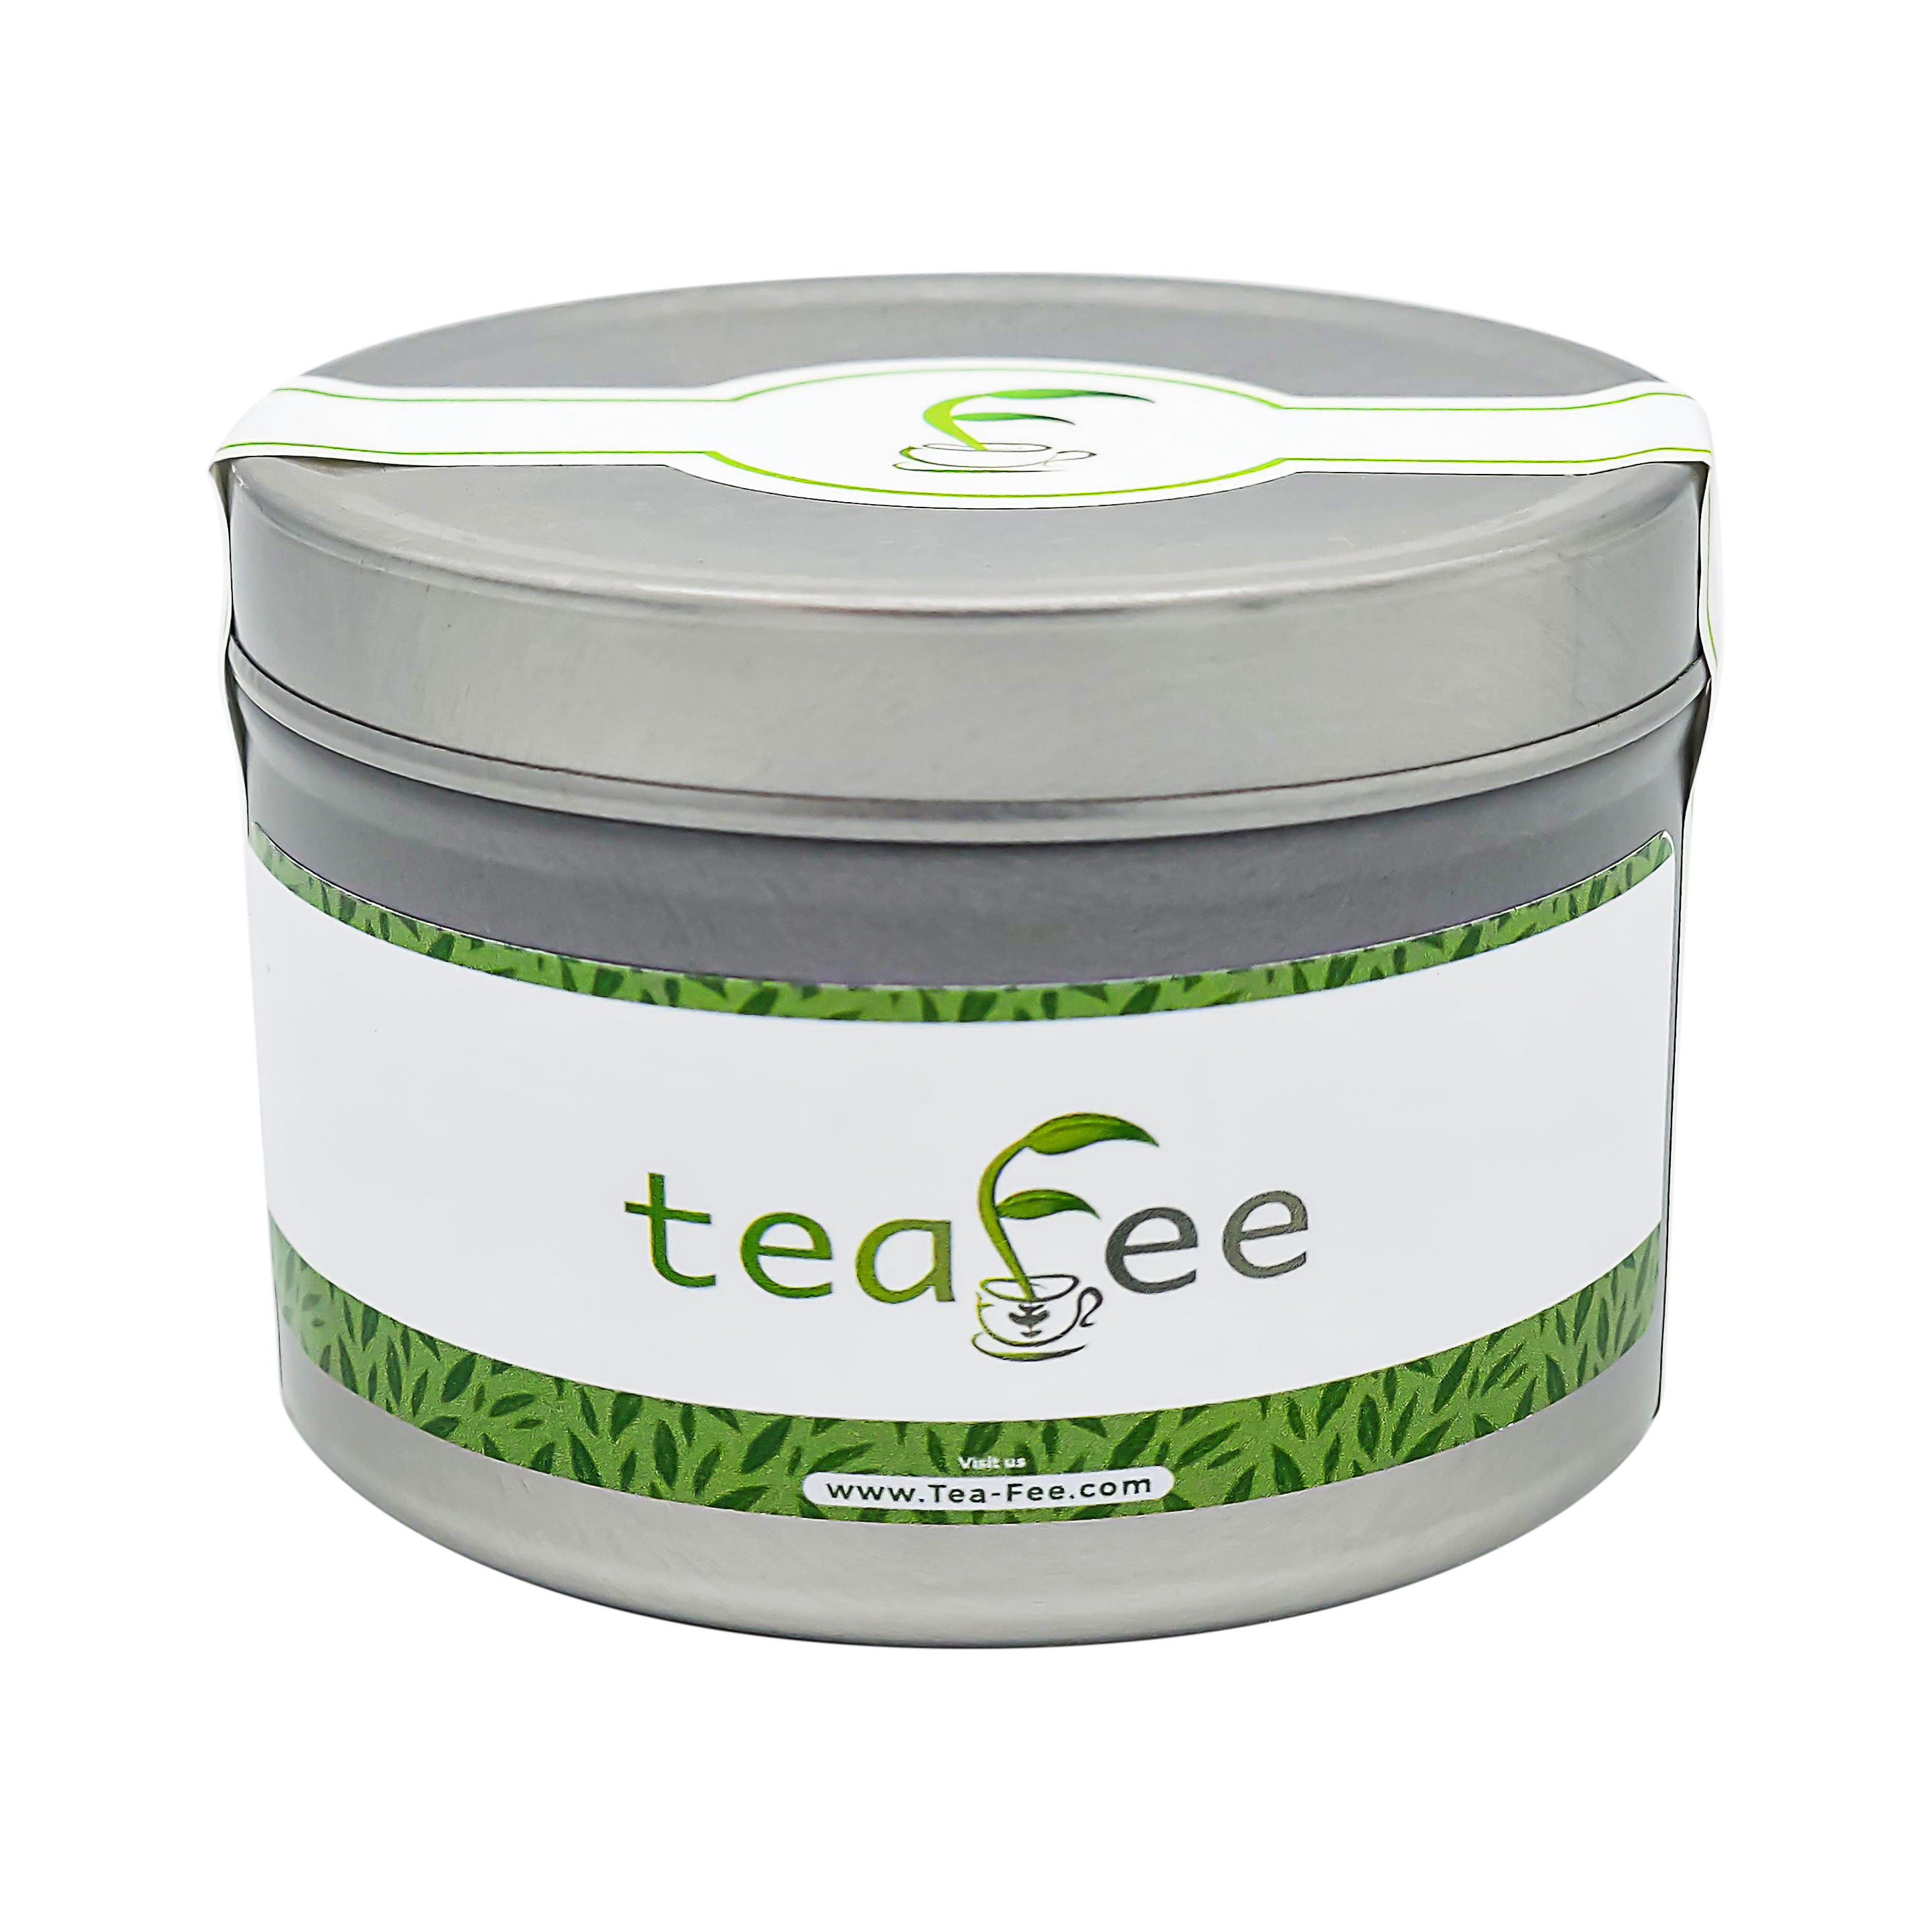 Teafee Original Blend - 8 oz